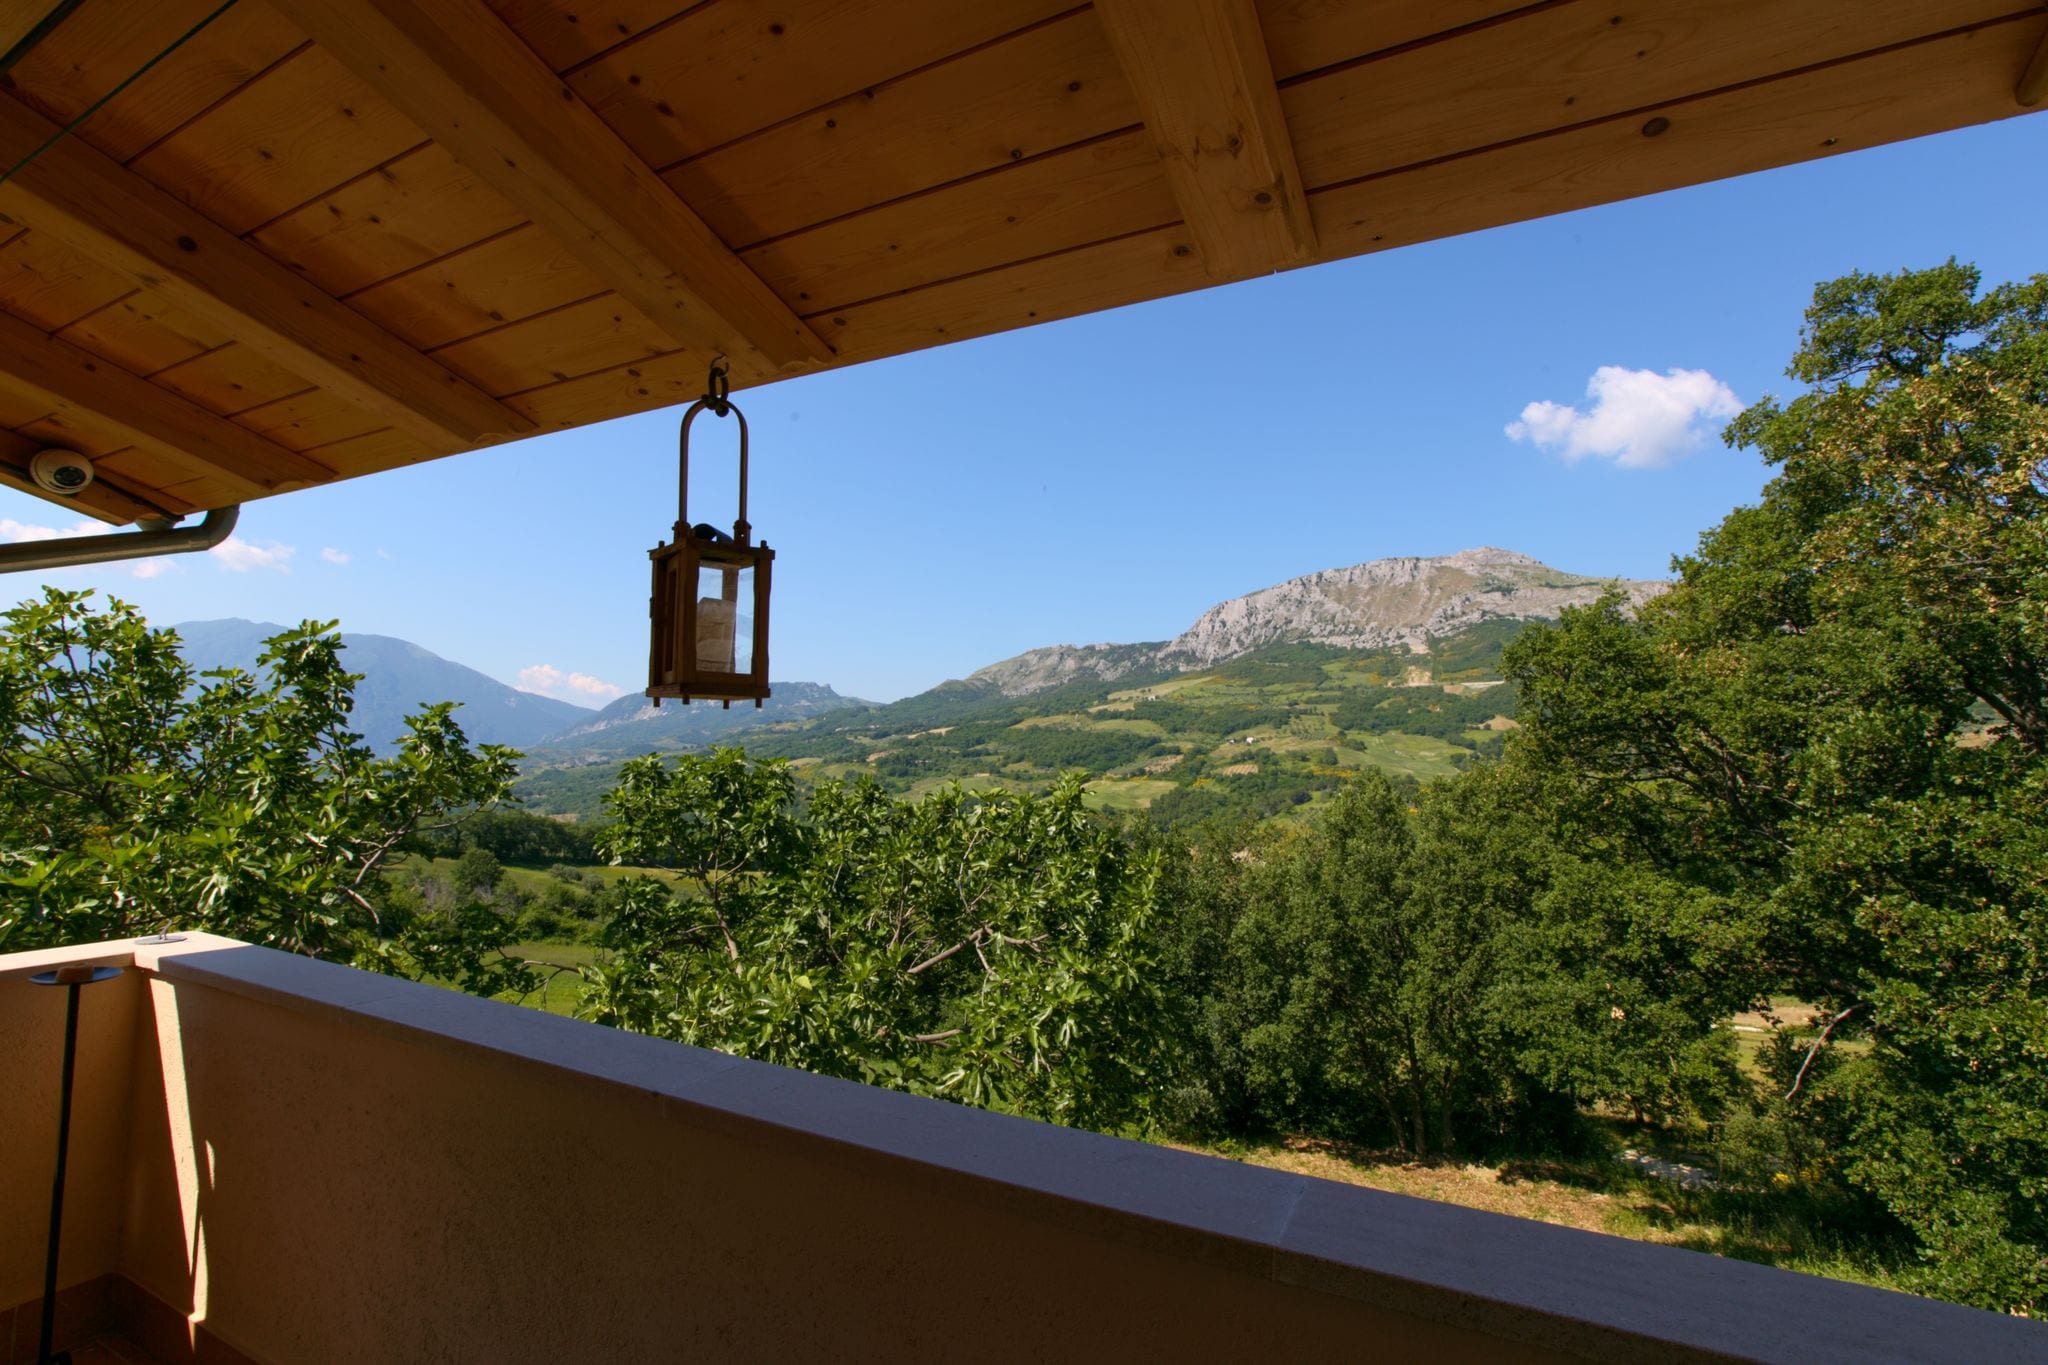 Villa met toren tussen de olijfbomen met privézwembad, mooi uitzicht